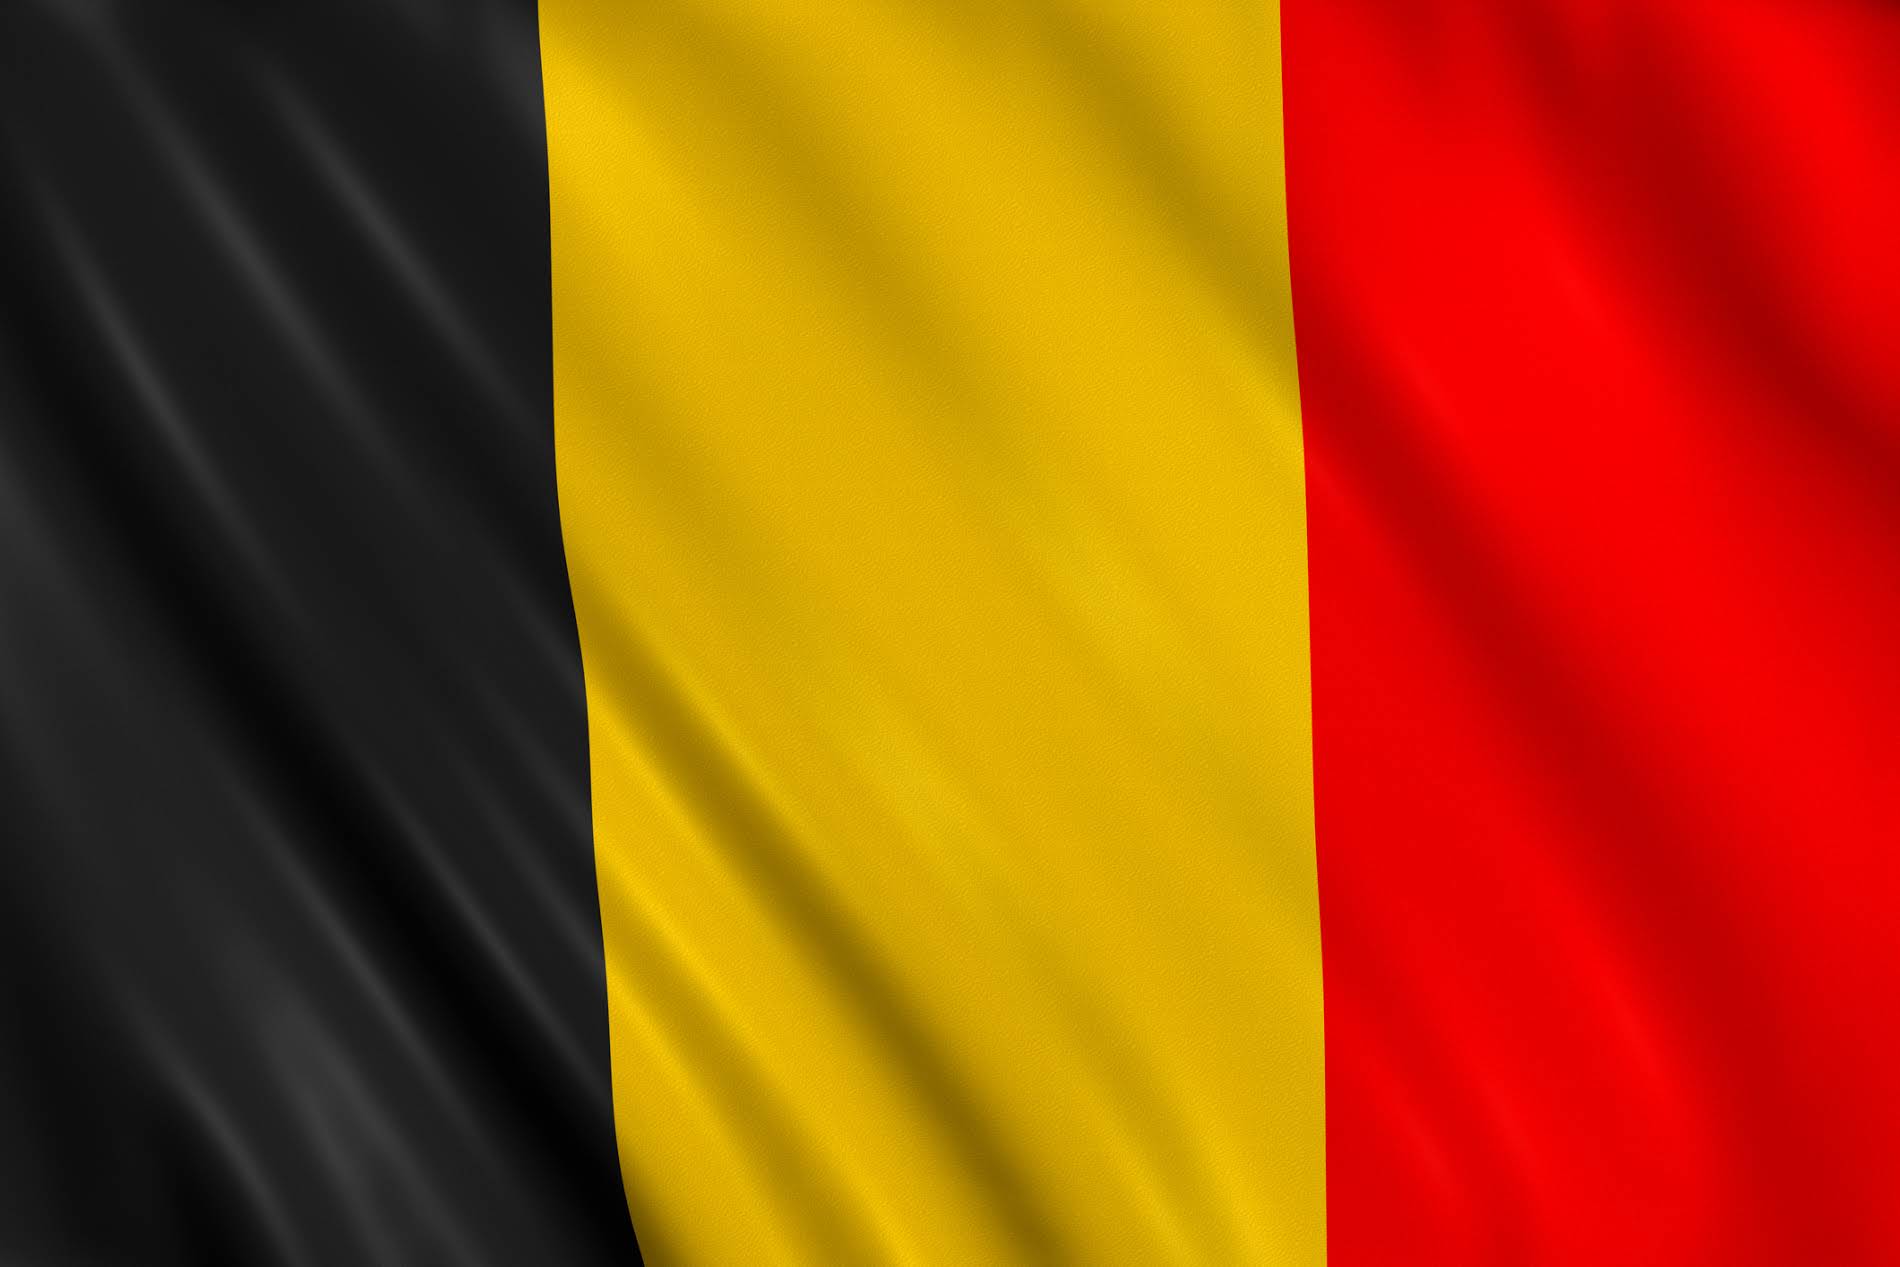 флаг бельгии картинки